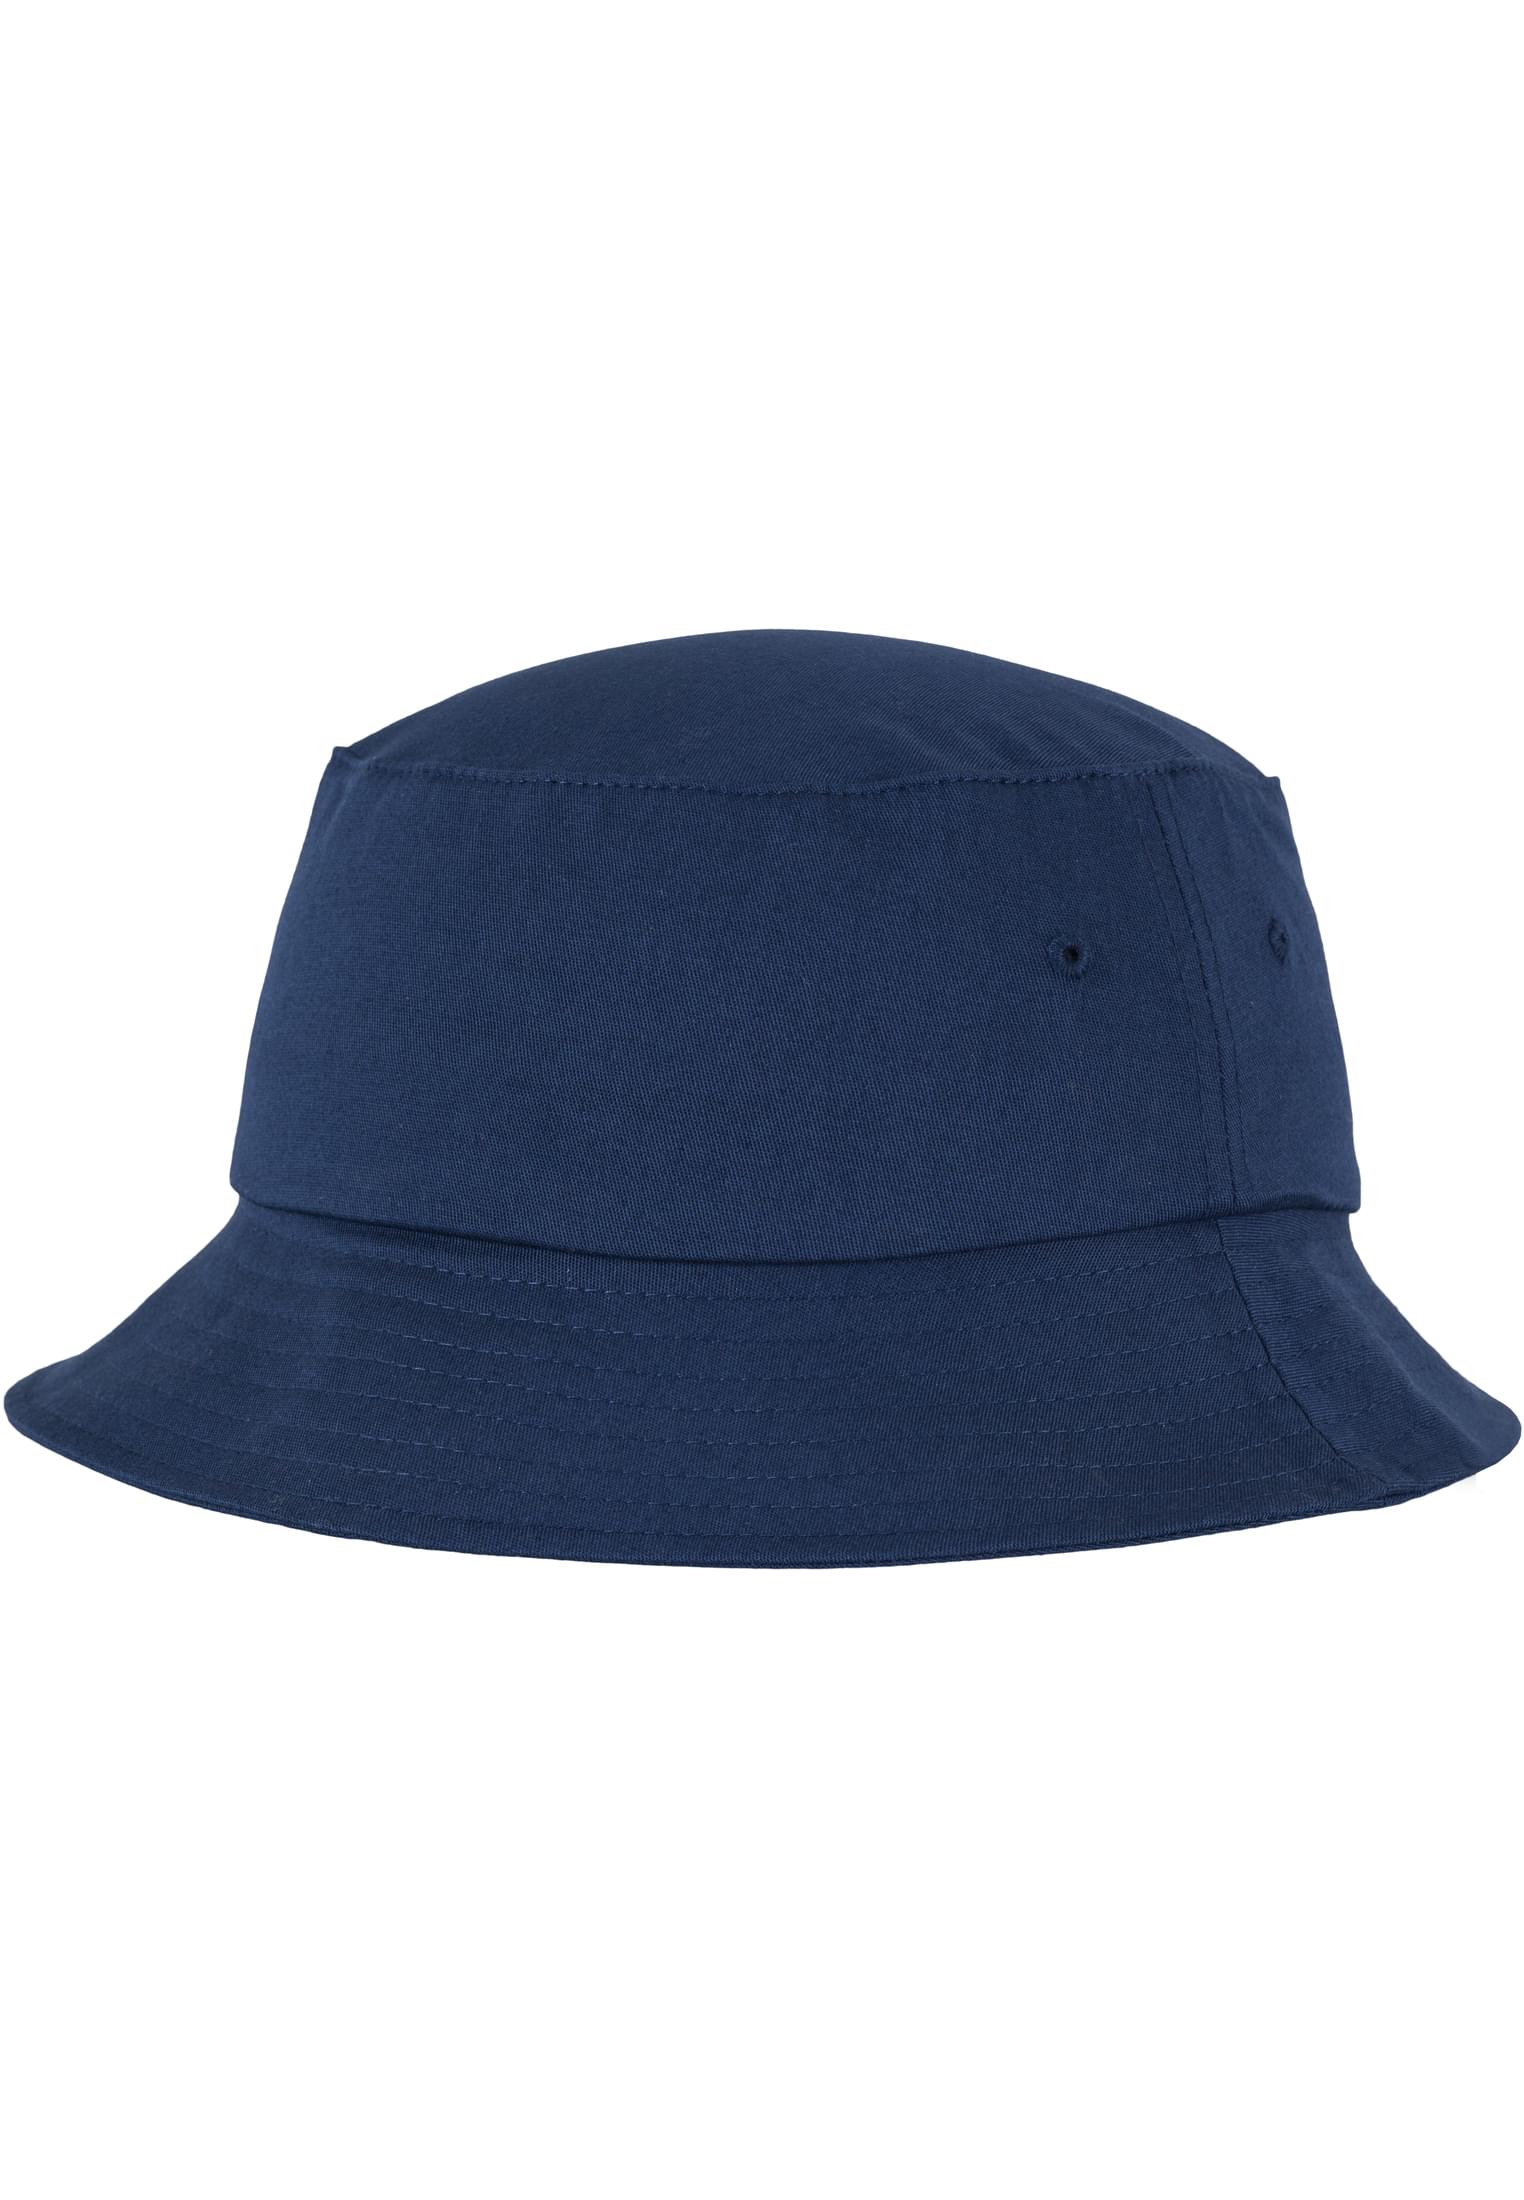 Twill Hat-5003 Flexfit Bucket Cotton